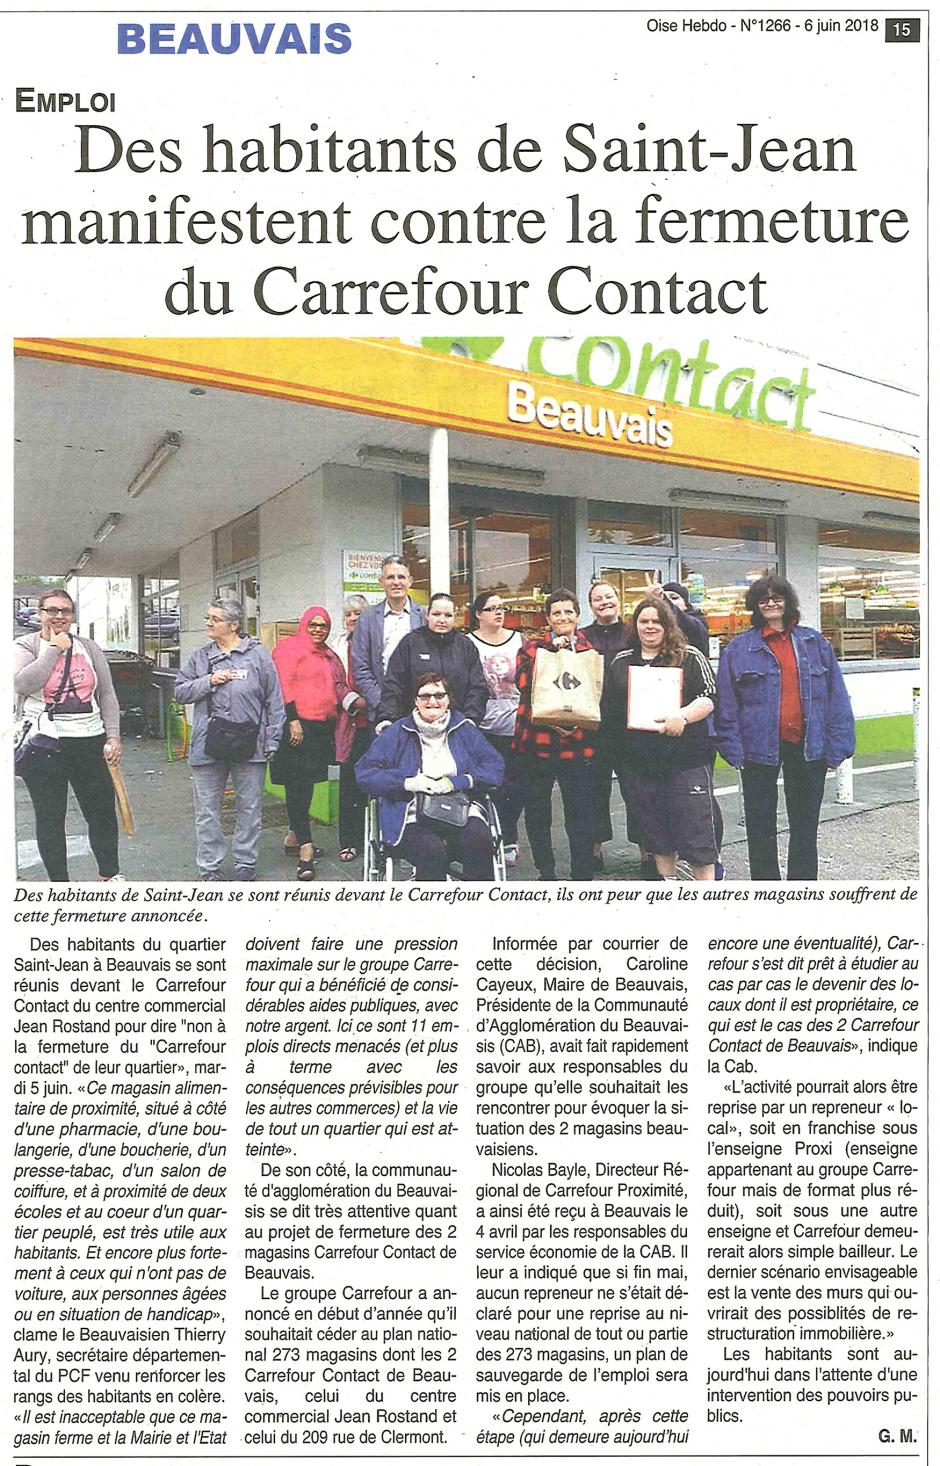 20180606-OH-Beauvais-Des habitants de Saint-Jean manifestent contre la fermeture du Carrefour Contact